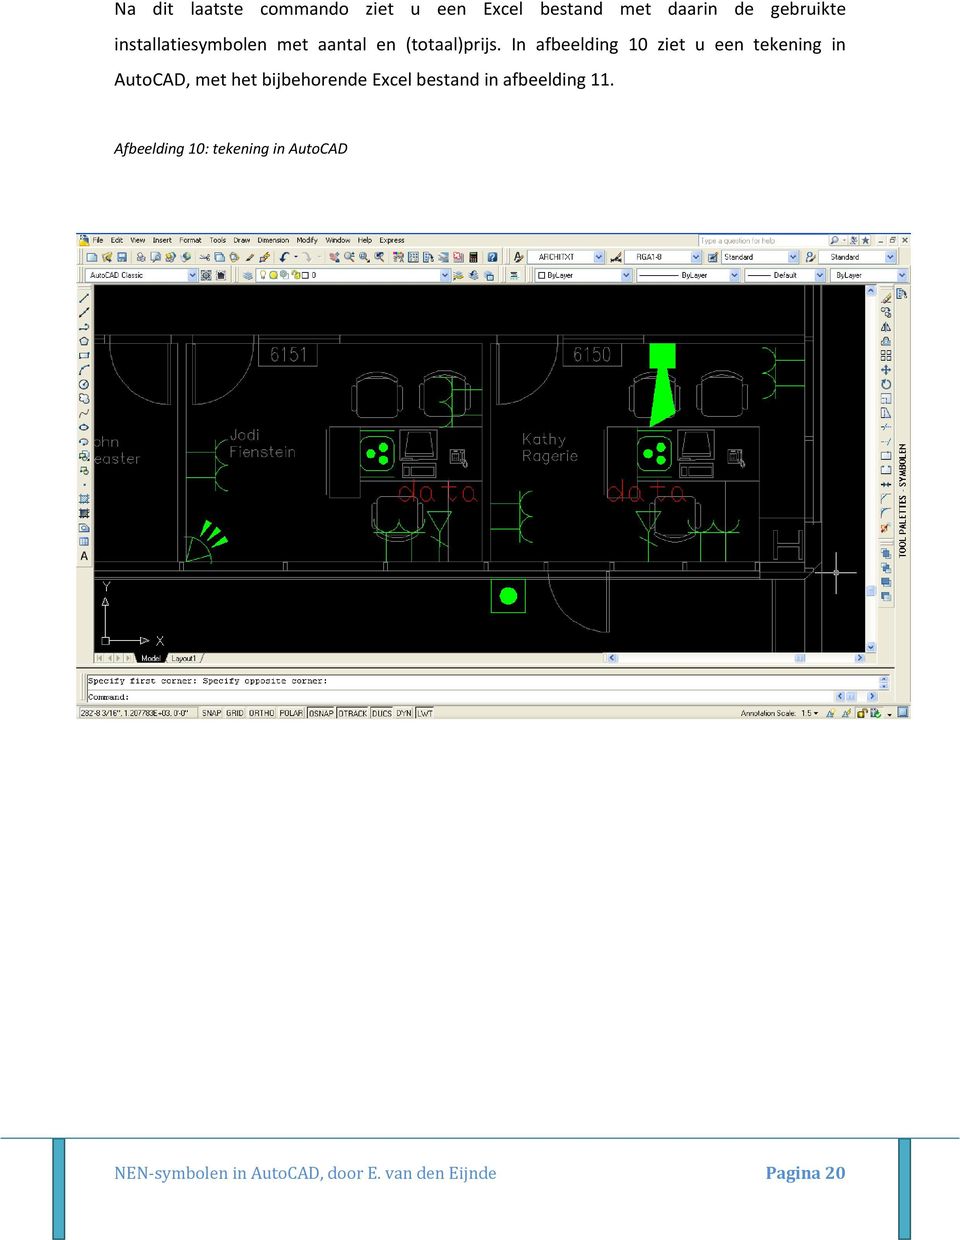 In afbeelding 10 ziet u een tekening in AutoCAD, met het bijbehorende Excel